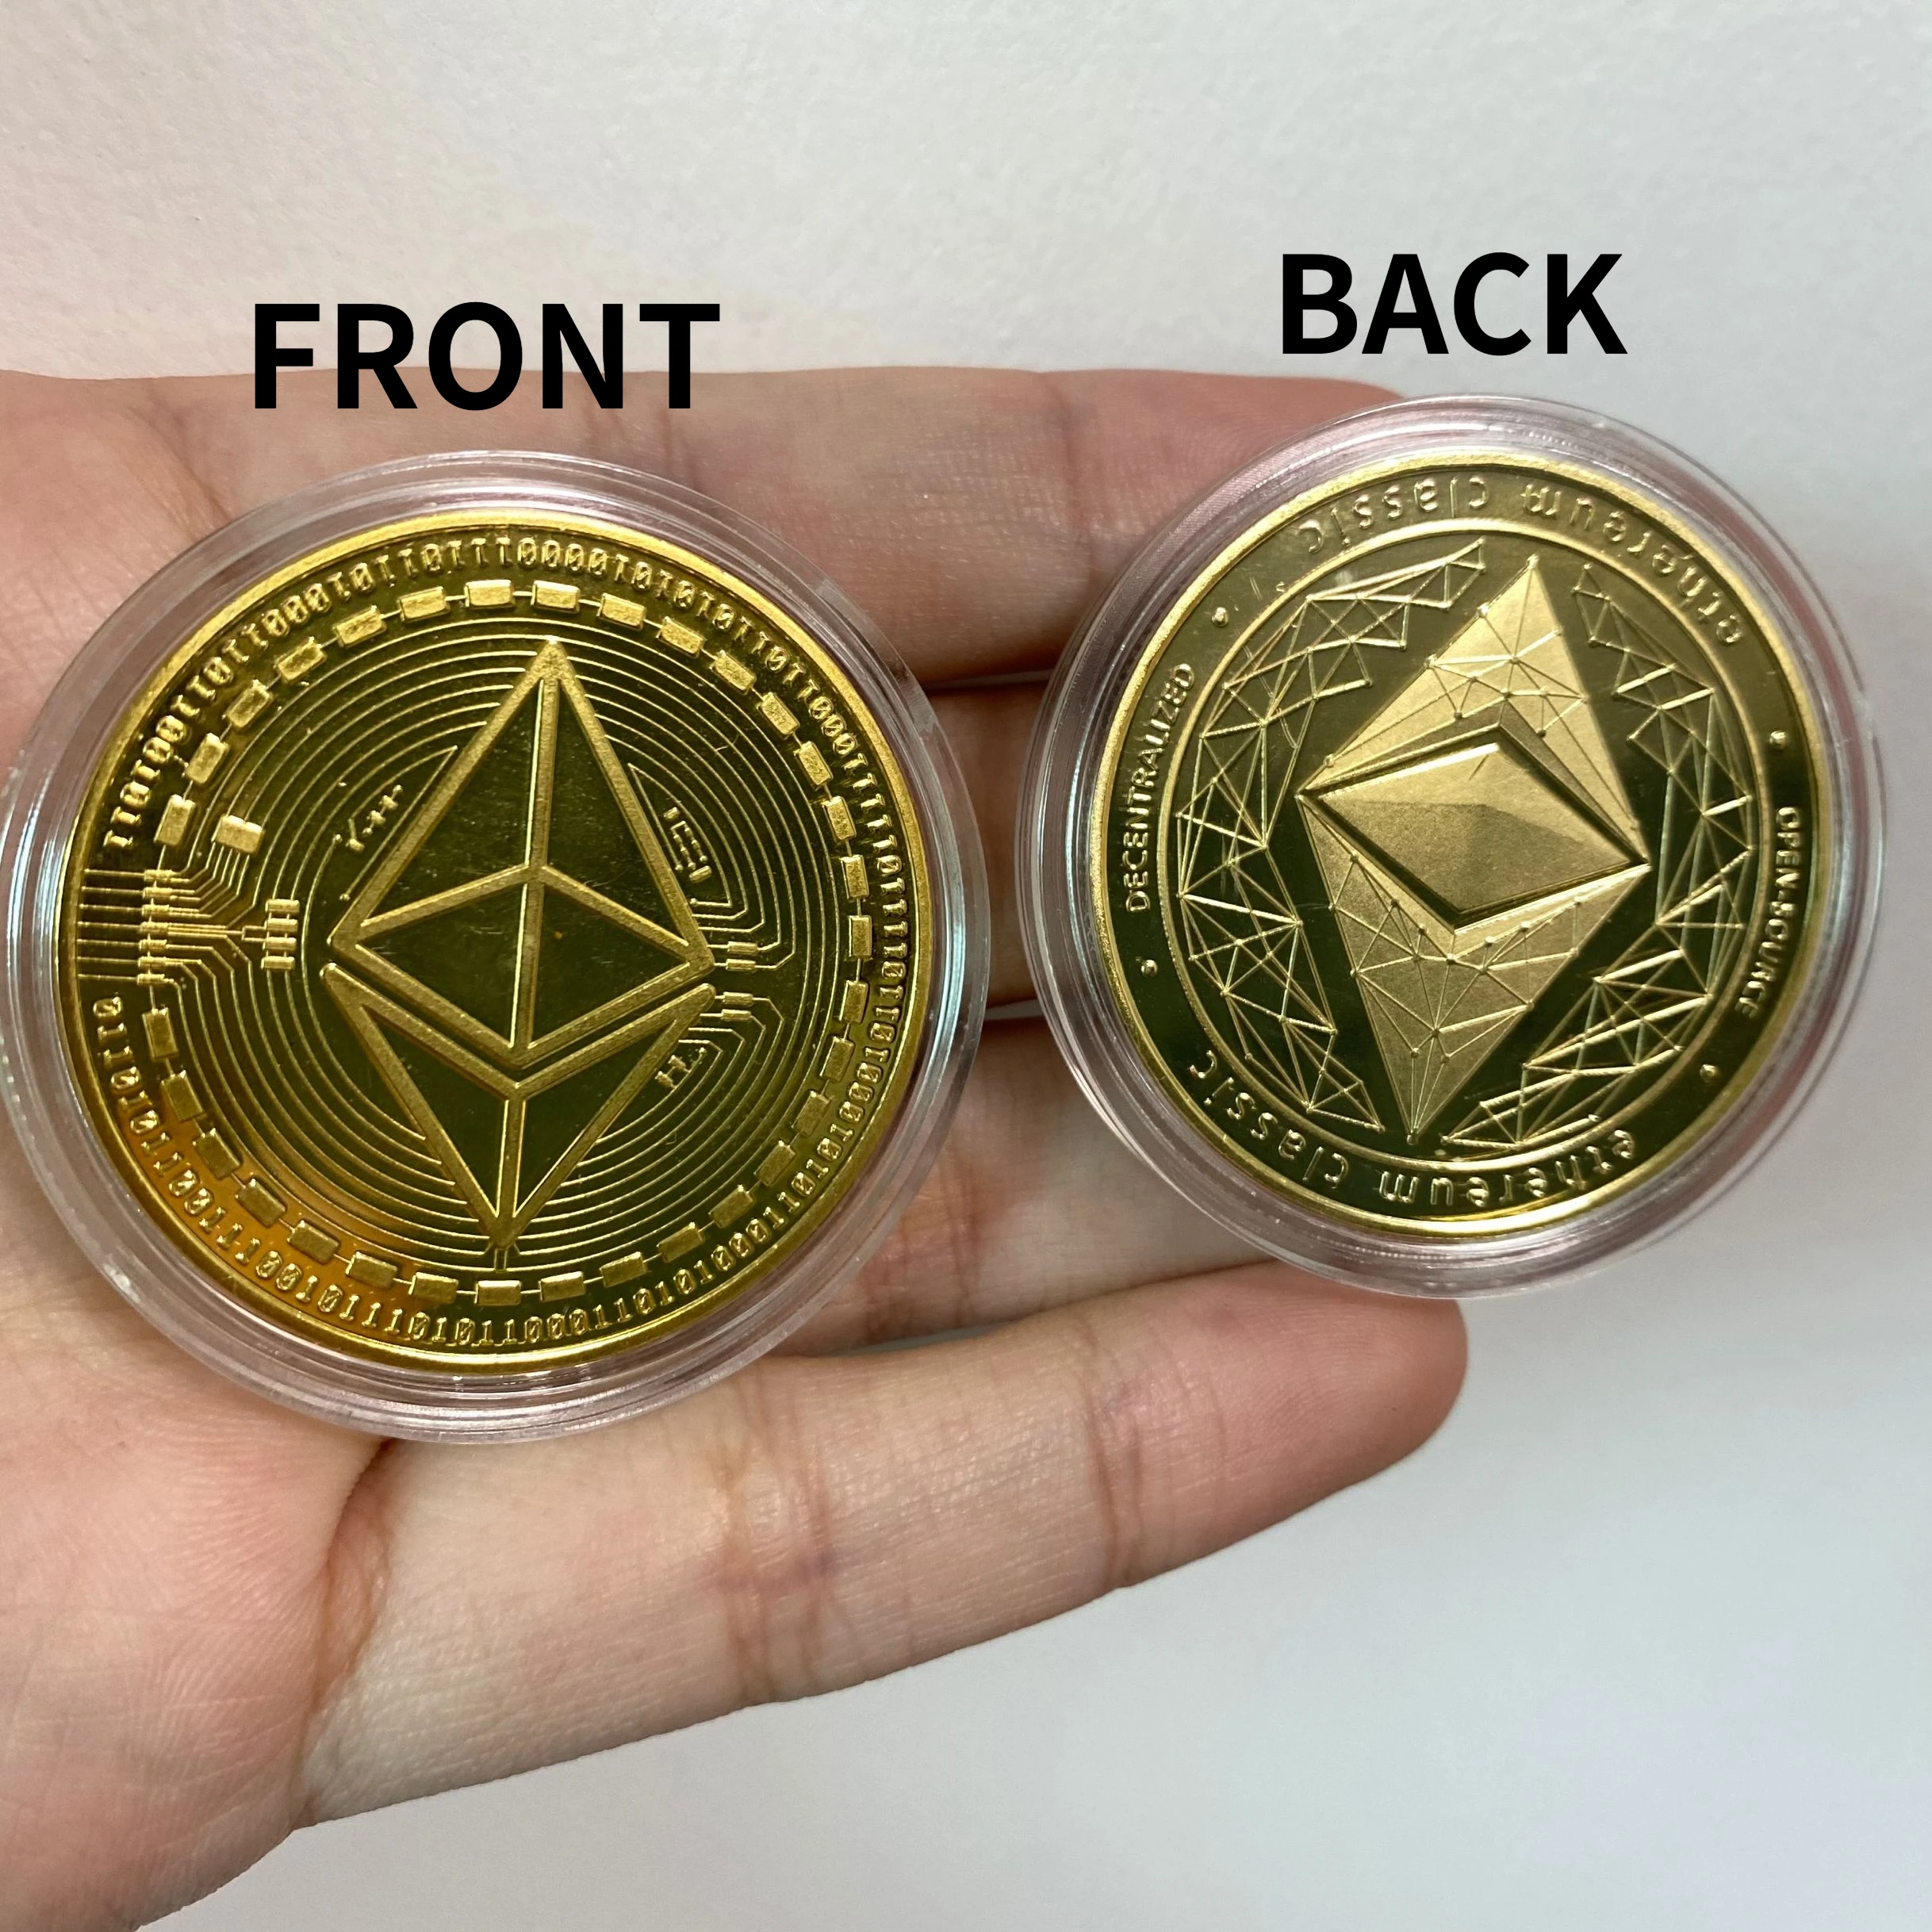 Cryptocurrency pirmosios monetos apžvalgos